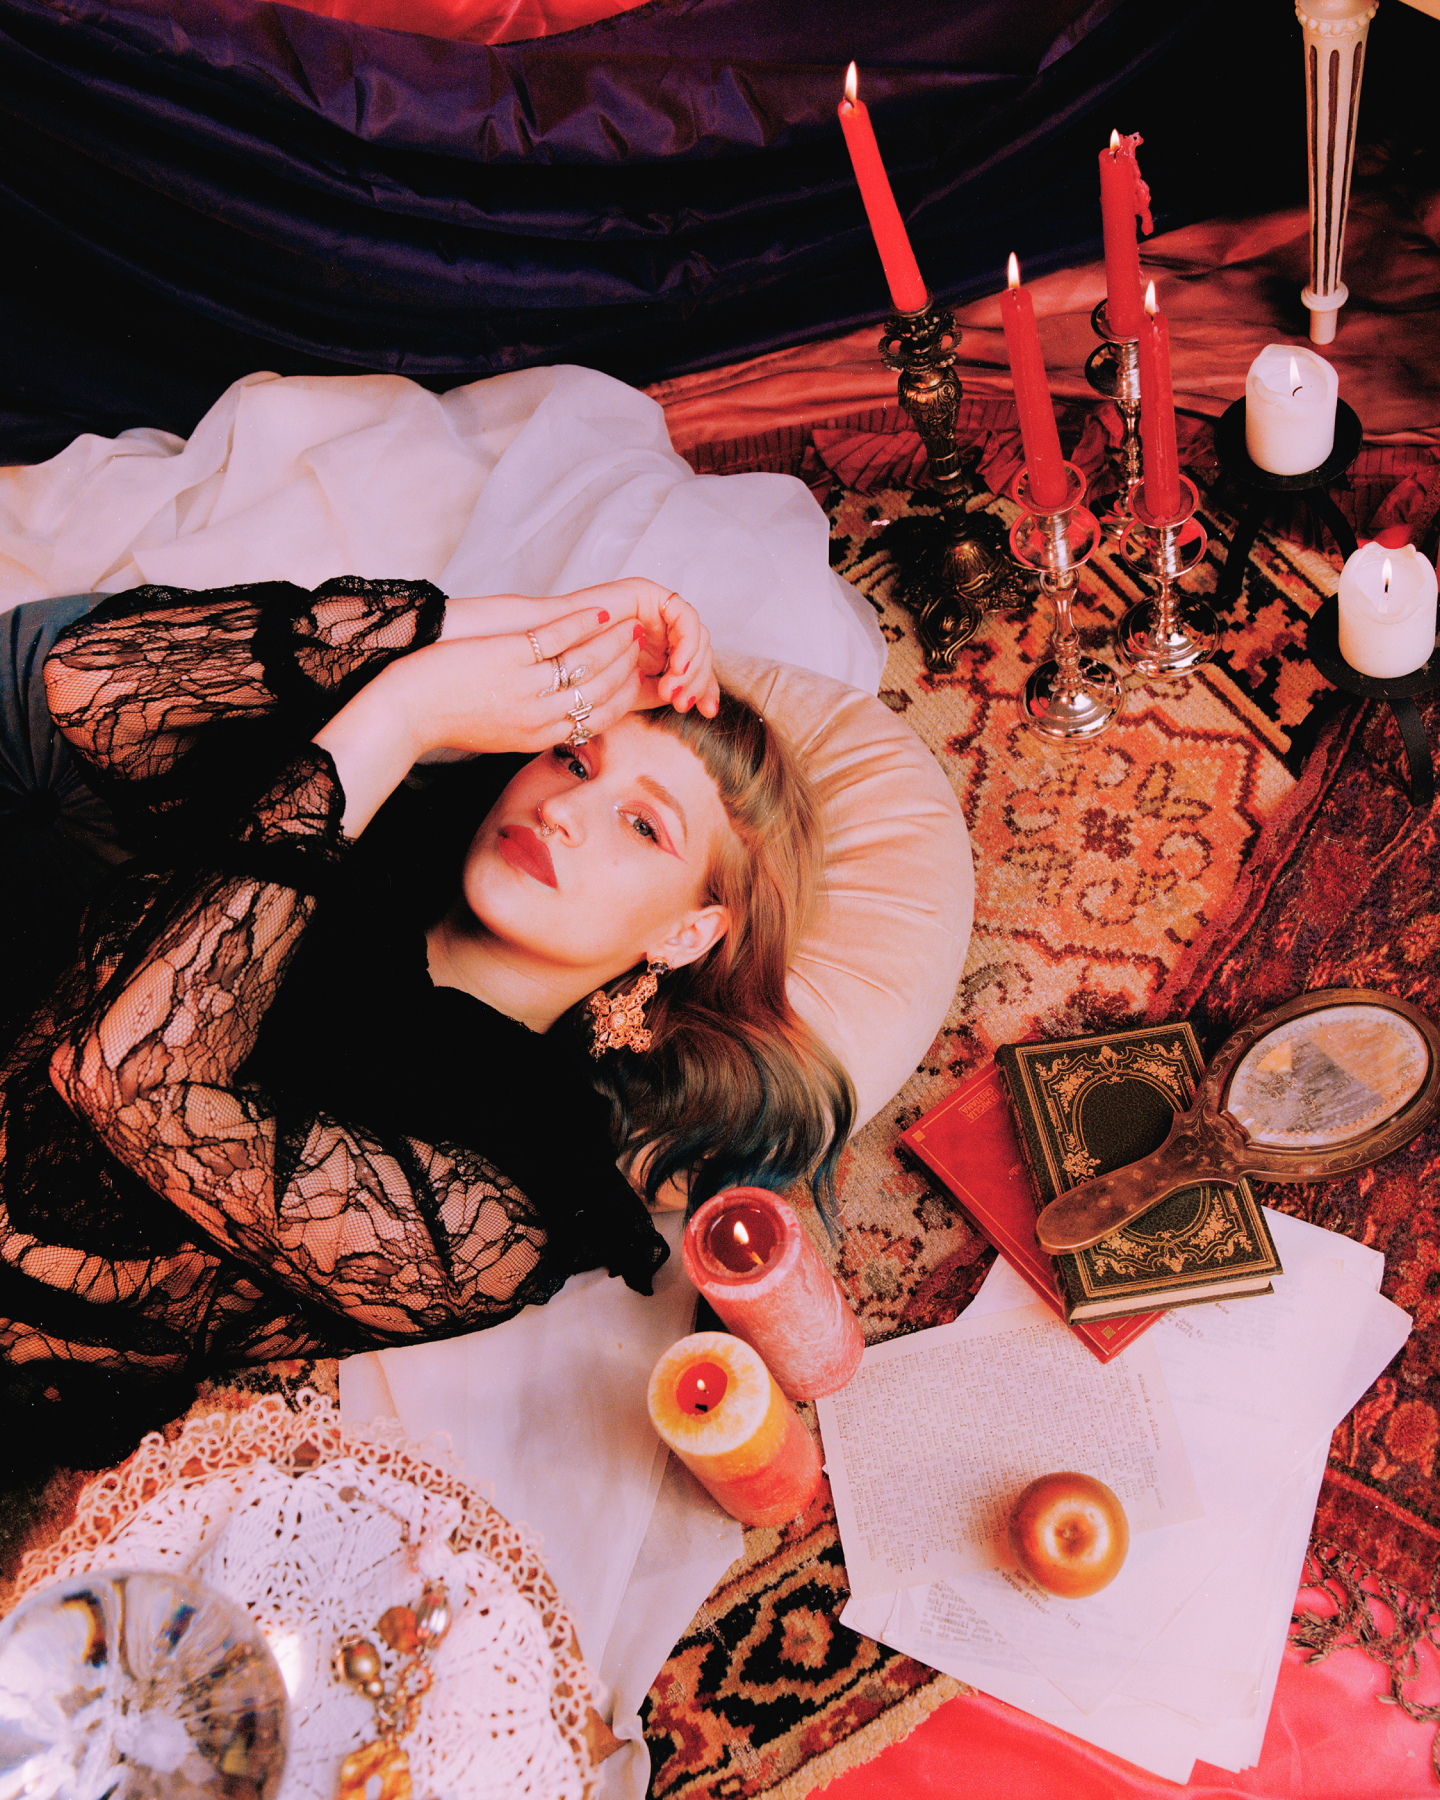 촛불에 둘러싸인 카펫 위에 누워 있는 아티스트 아이코